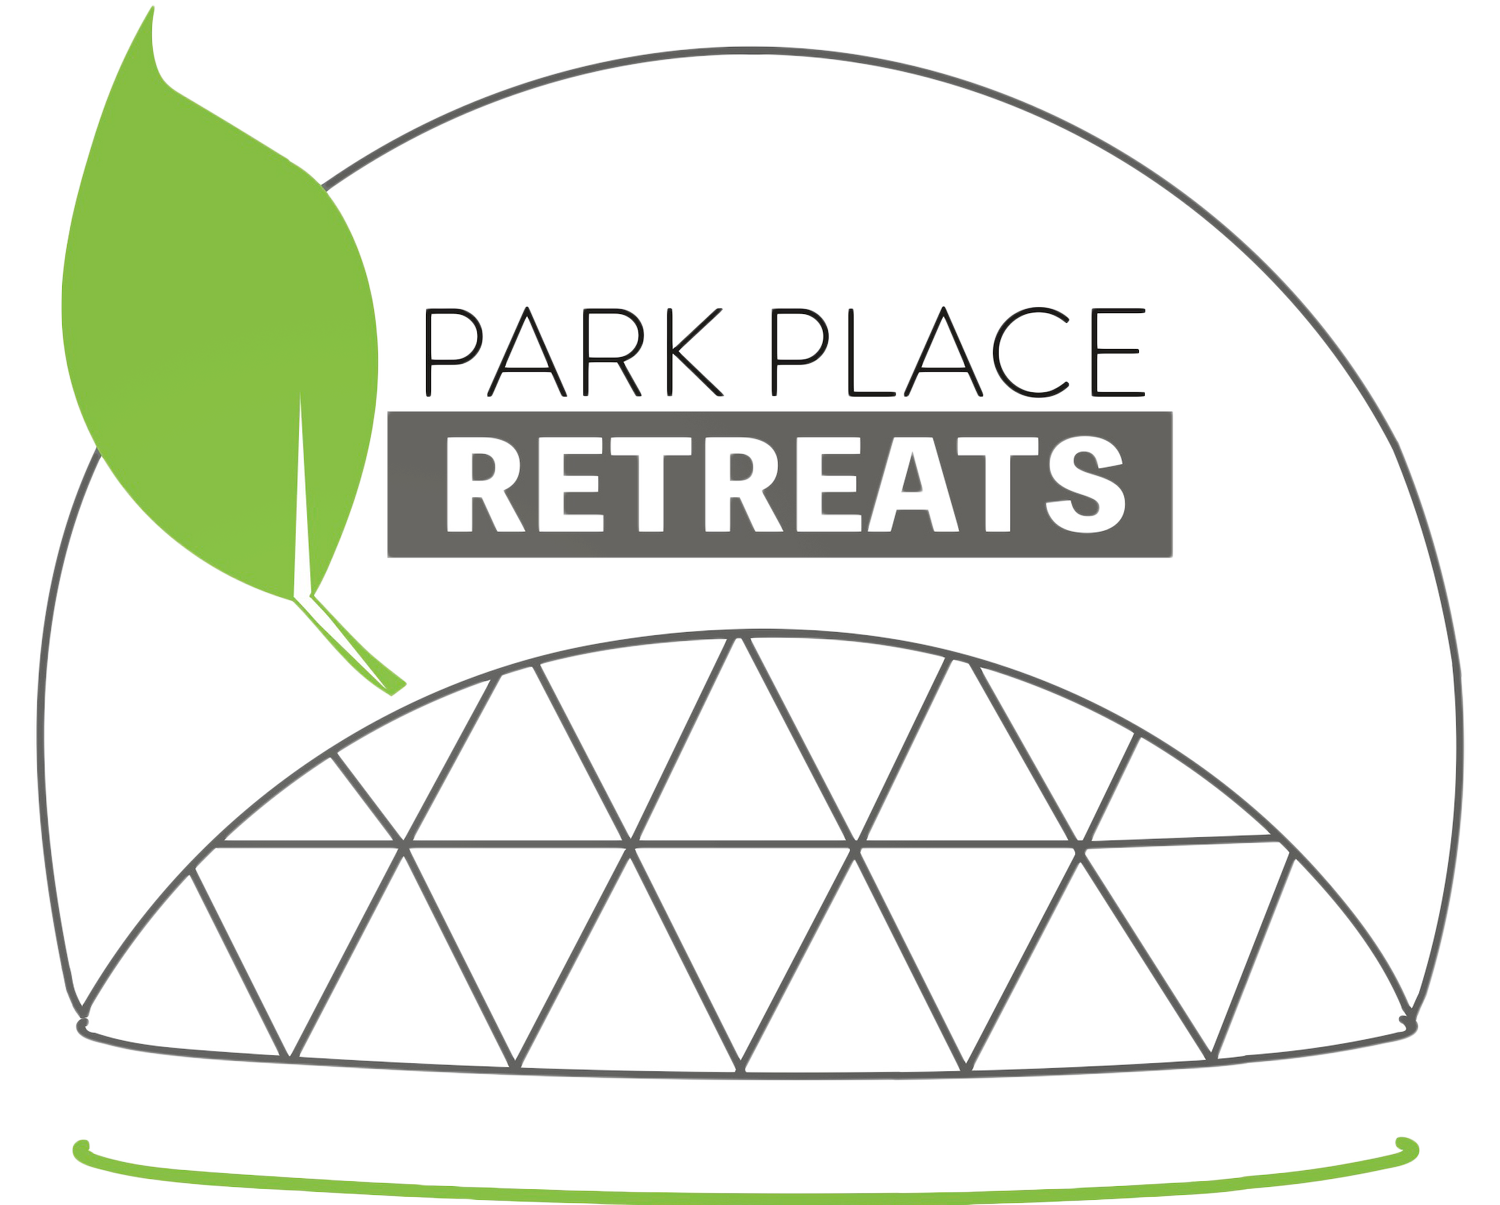 Park Place Retreats